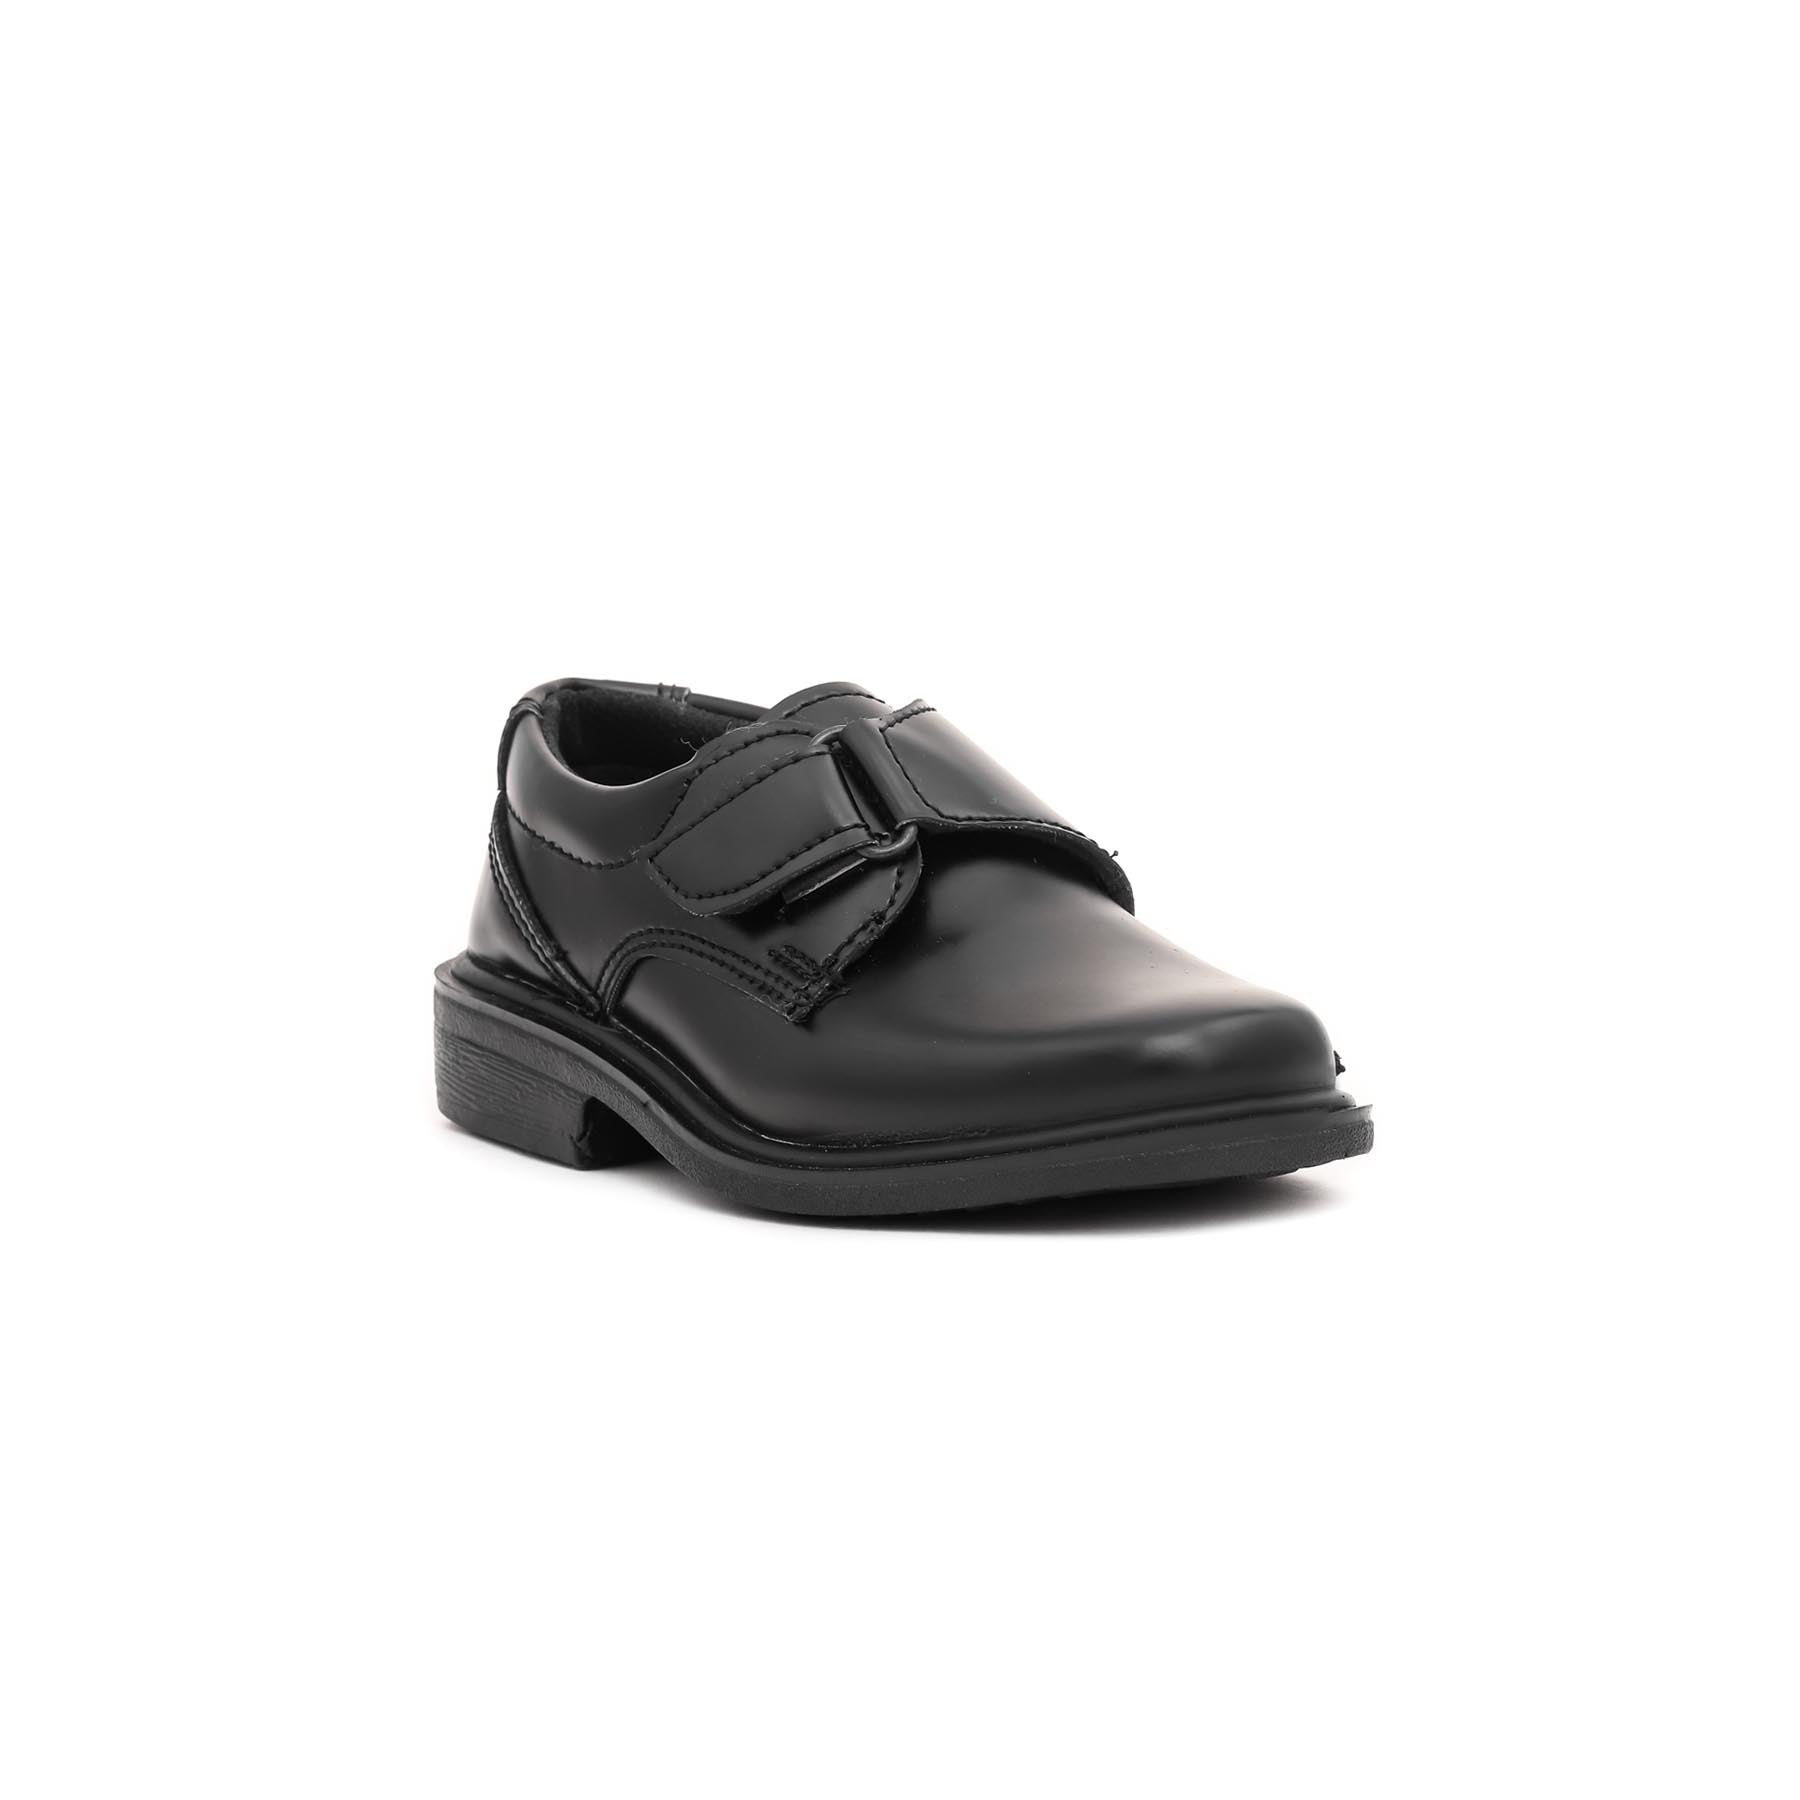 Boys Black School Shoes SK1058